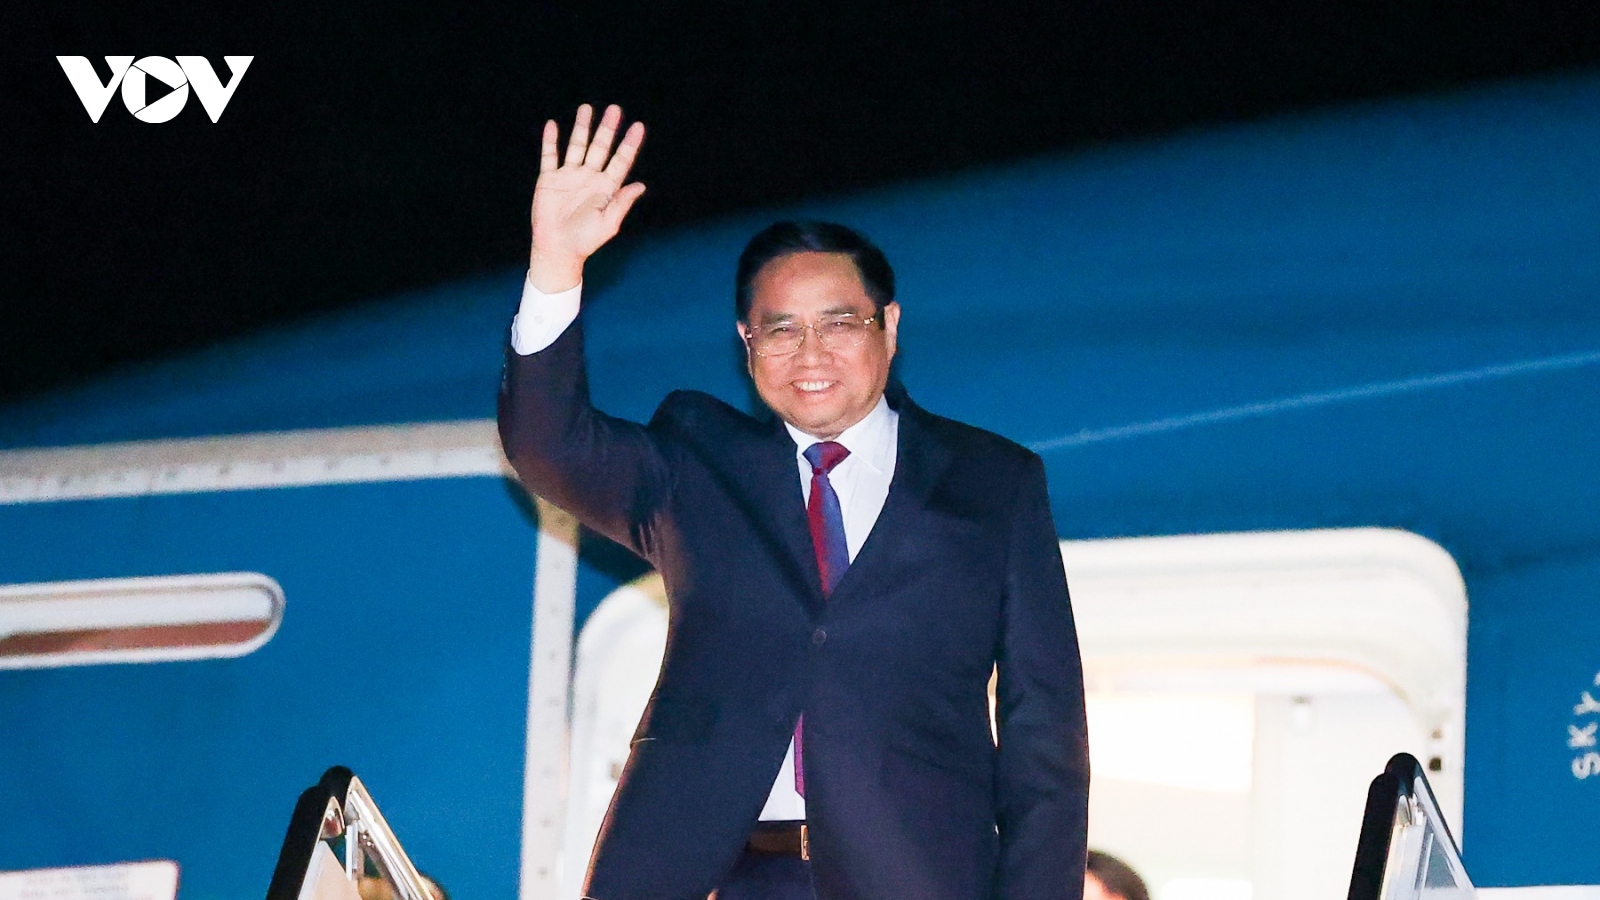 Thủ tướng Phạm Minh Chính tới thủ đô Washington, bắt đầu chuyến công tác tại Hoa Kỳ 